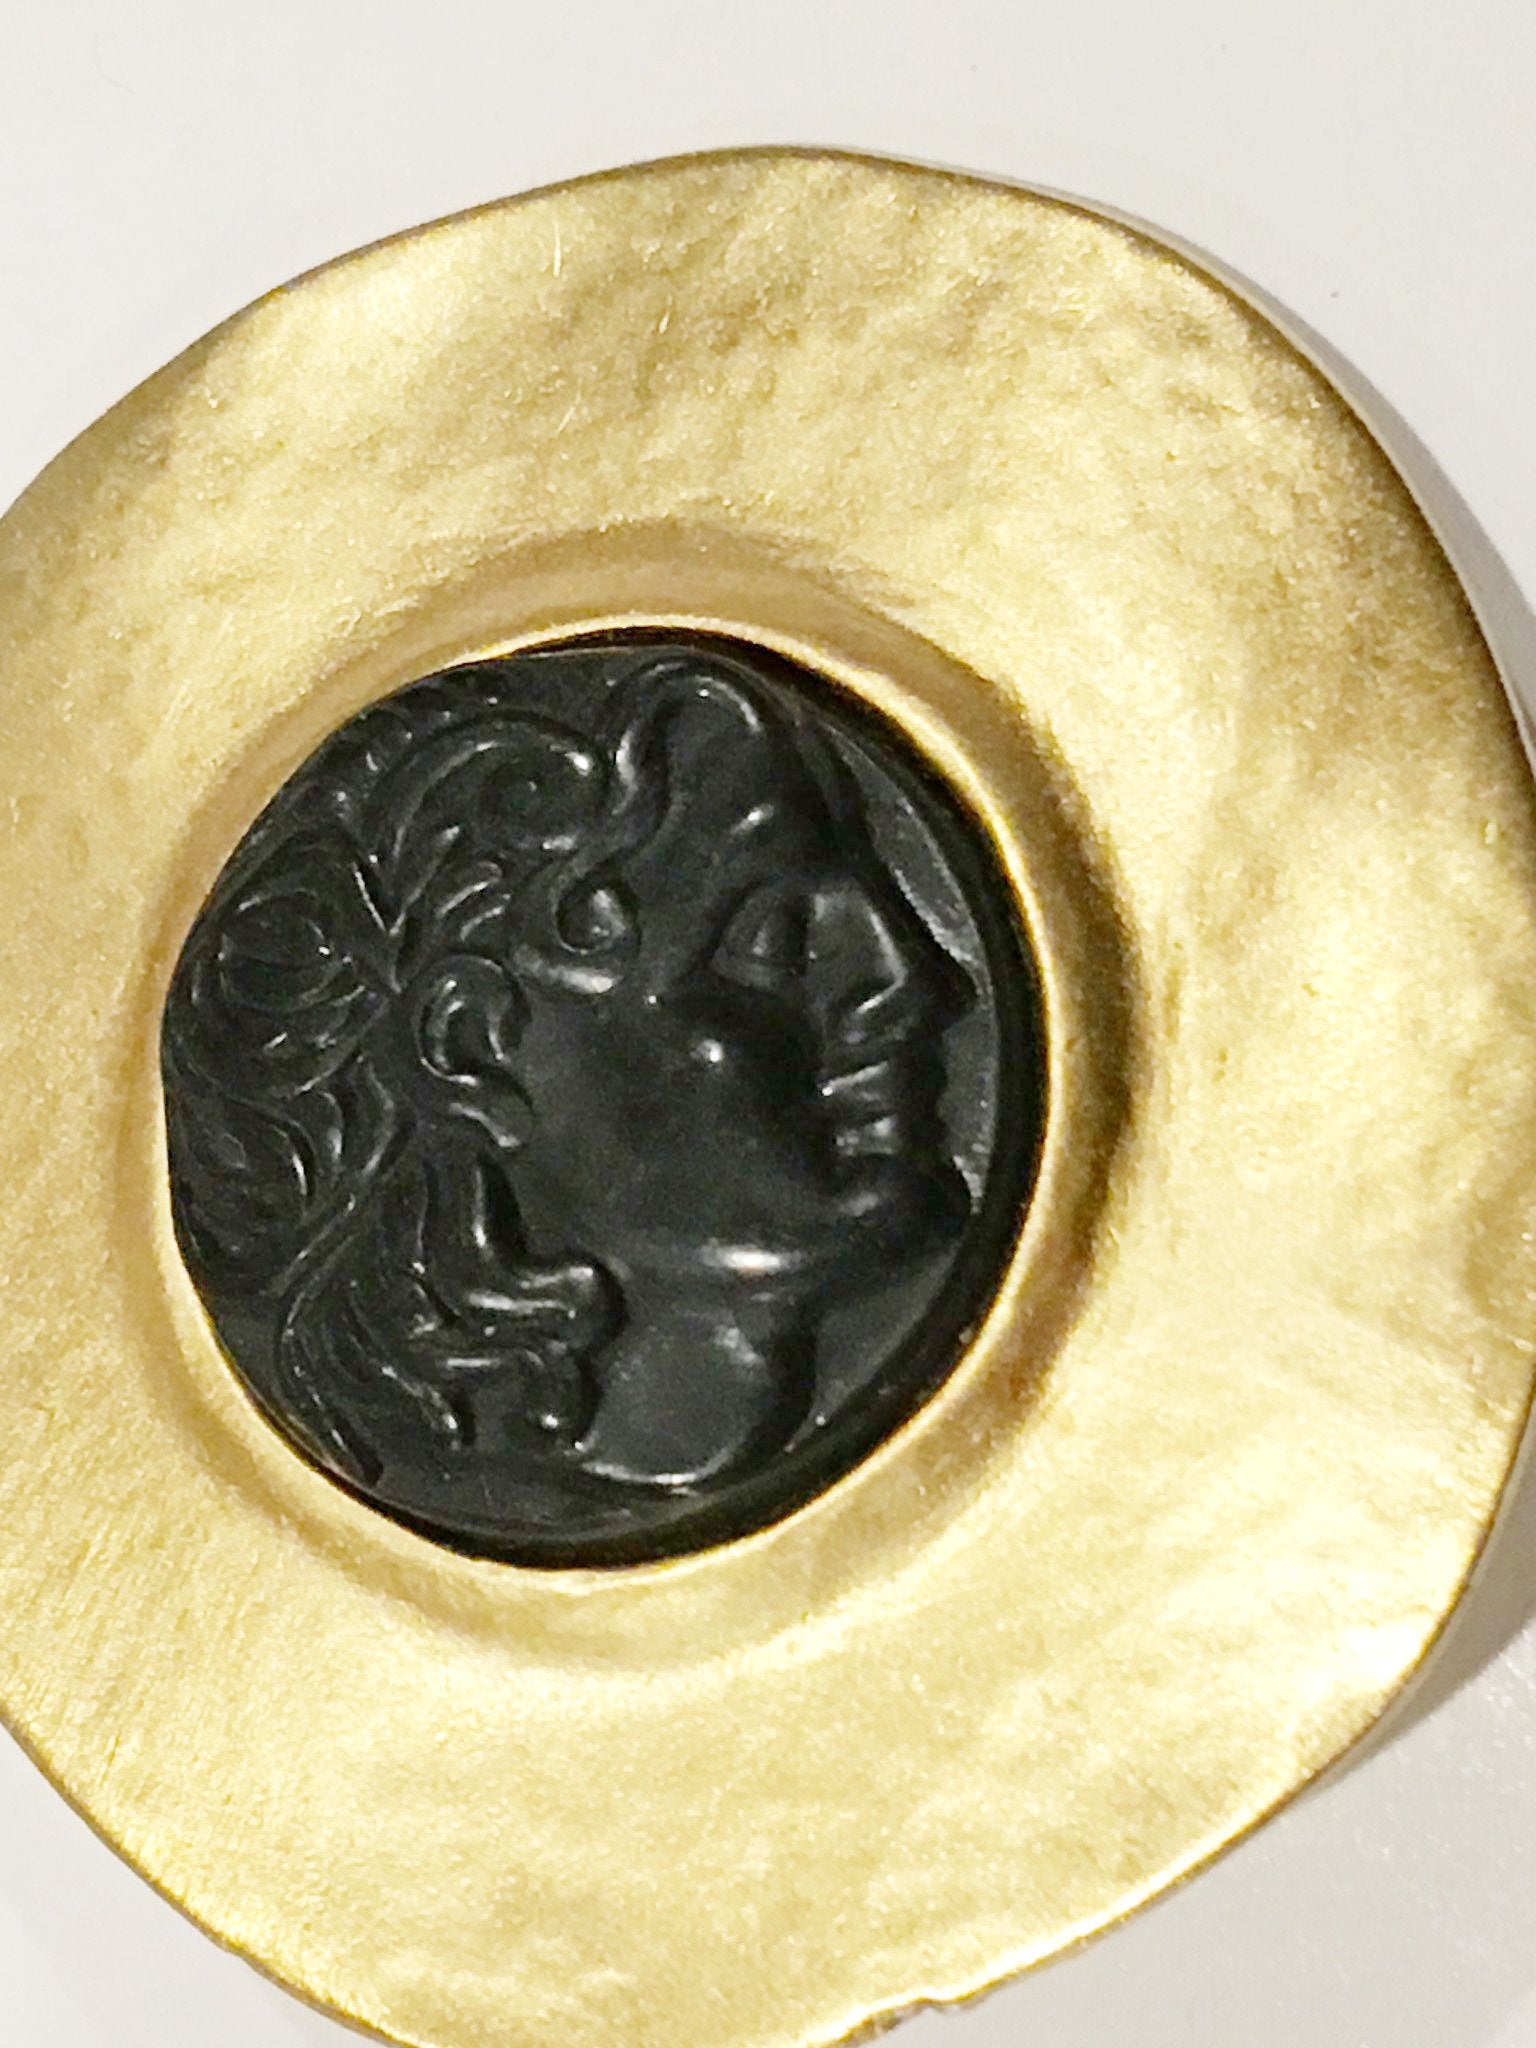 Merlusa Hercules Clip on Earrings Vintage Jewelry